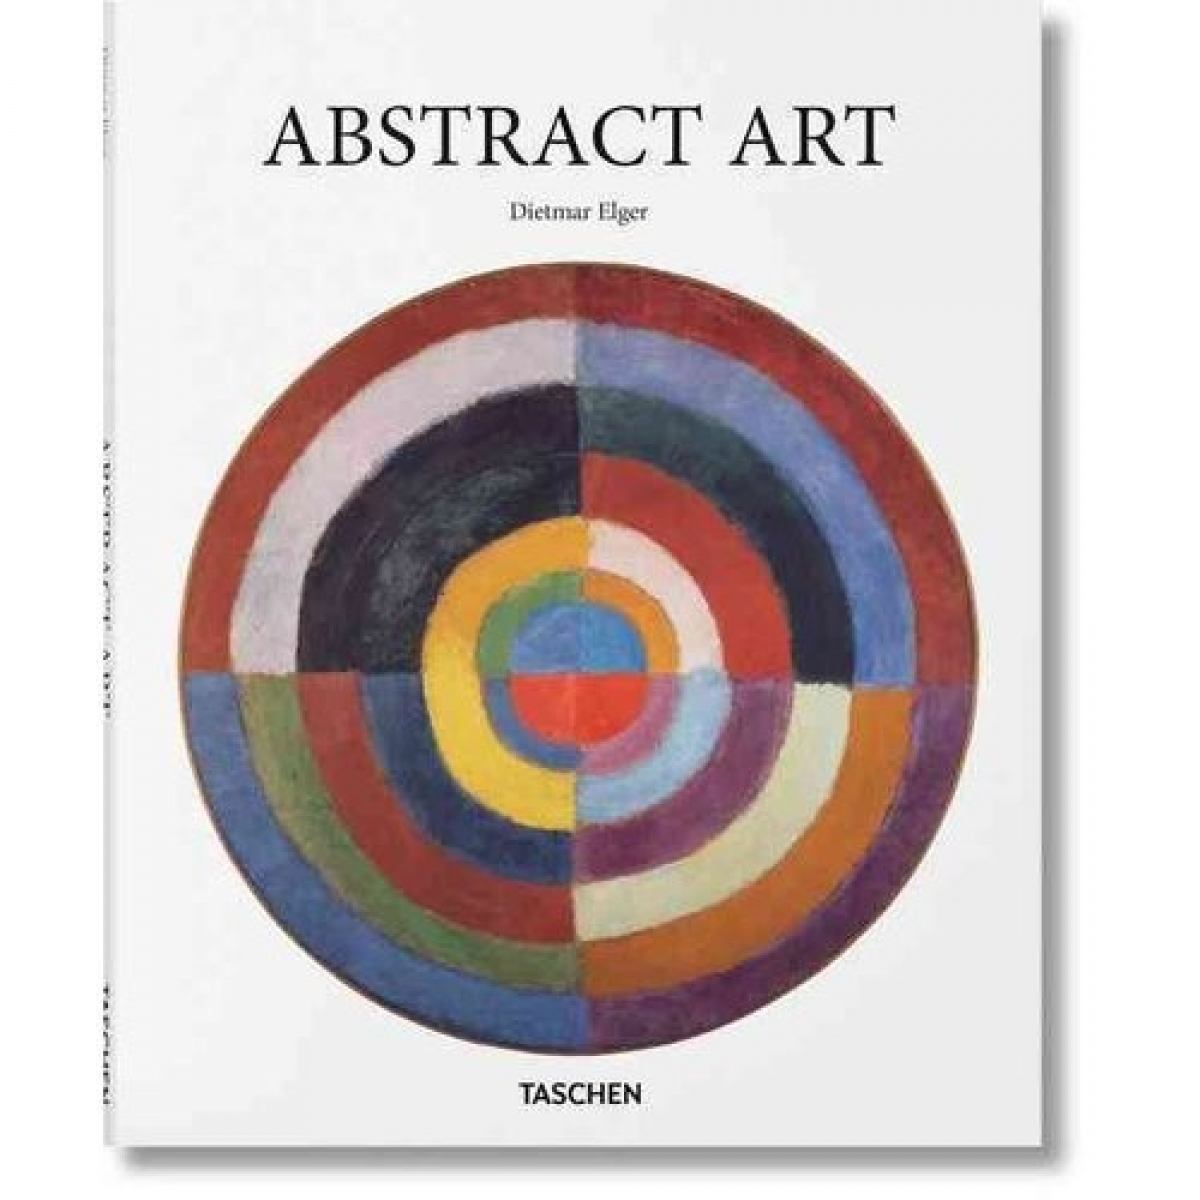 Dietmar Elger Abstract Art (Basic Art) 